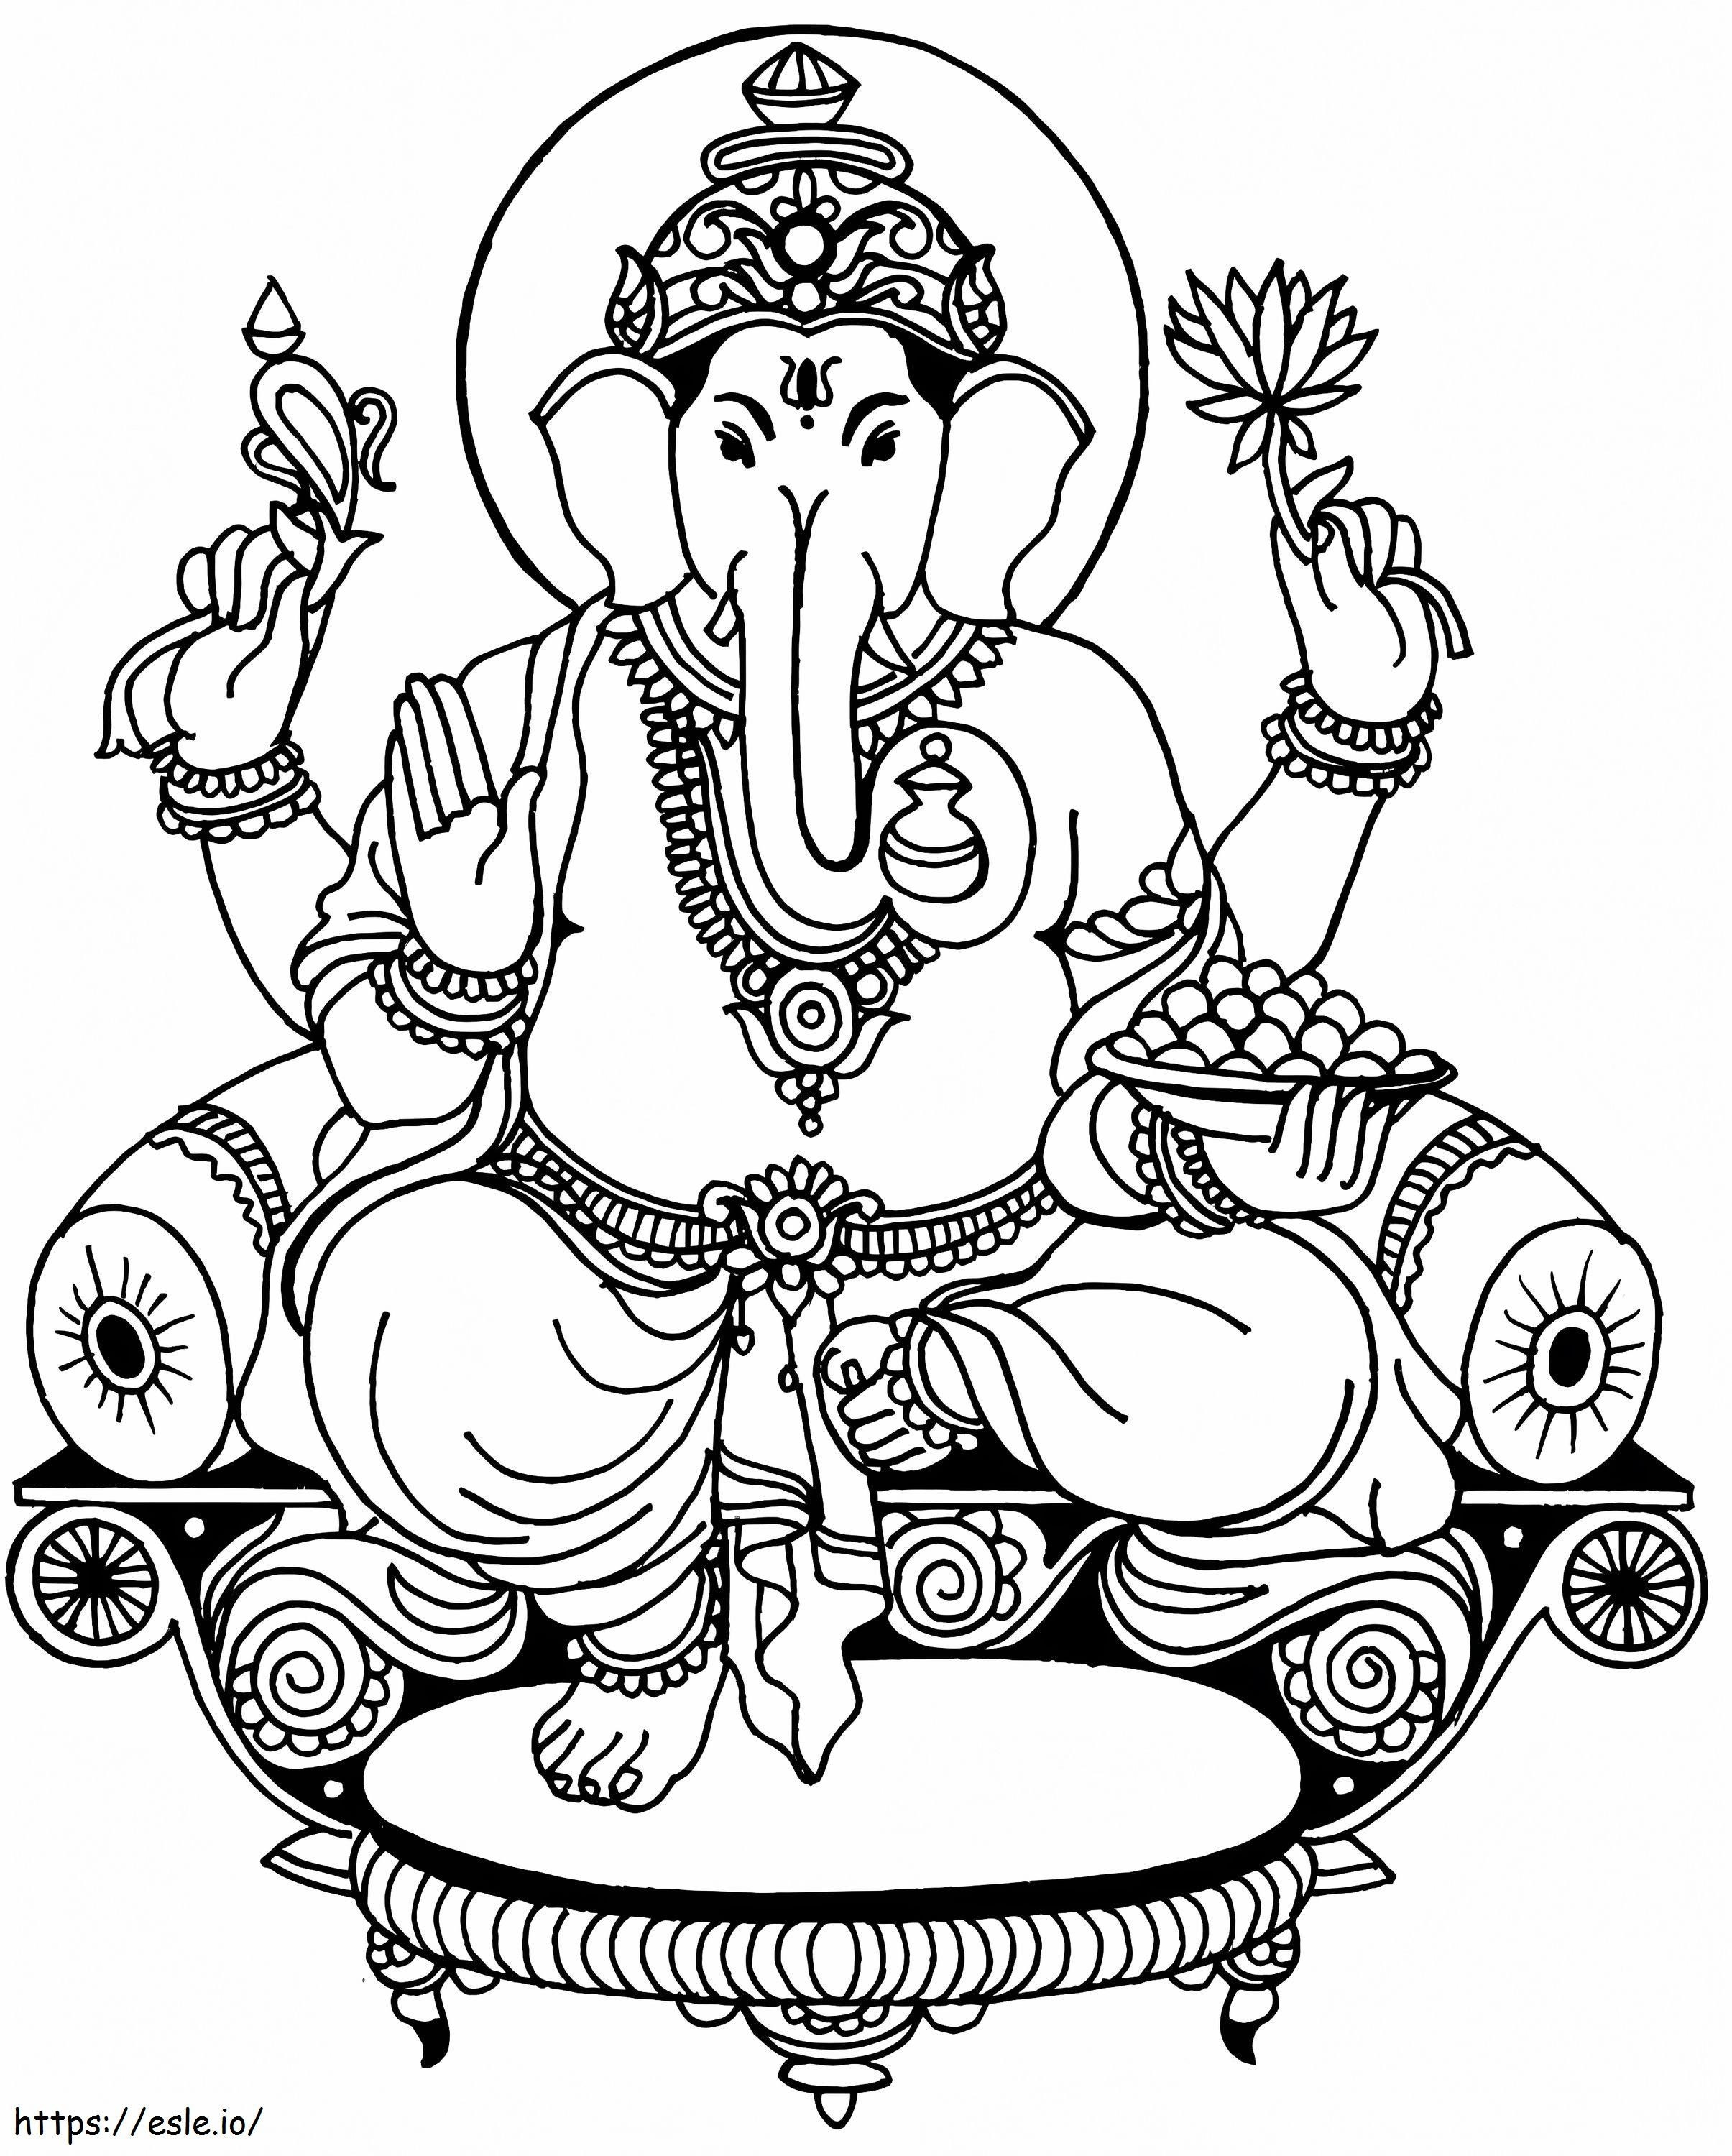 Lord Ganesha 1 coloring page